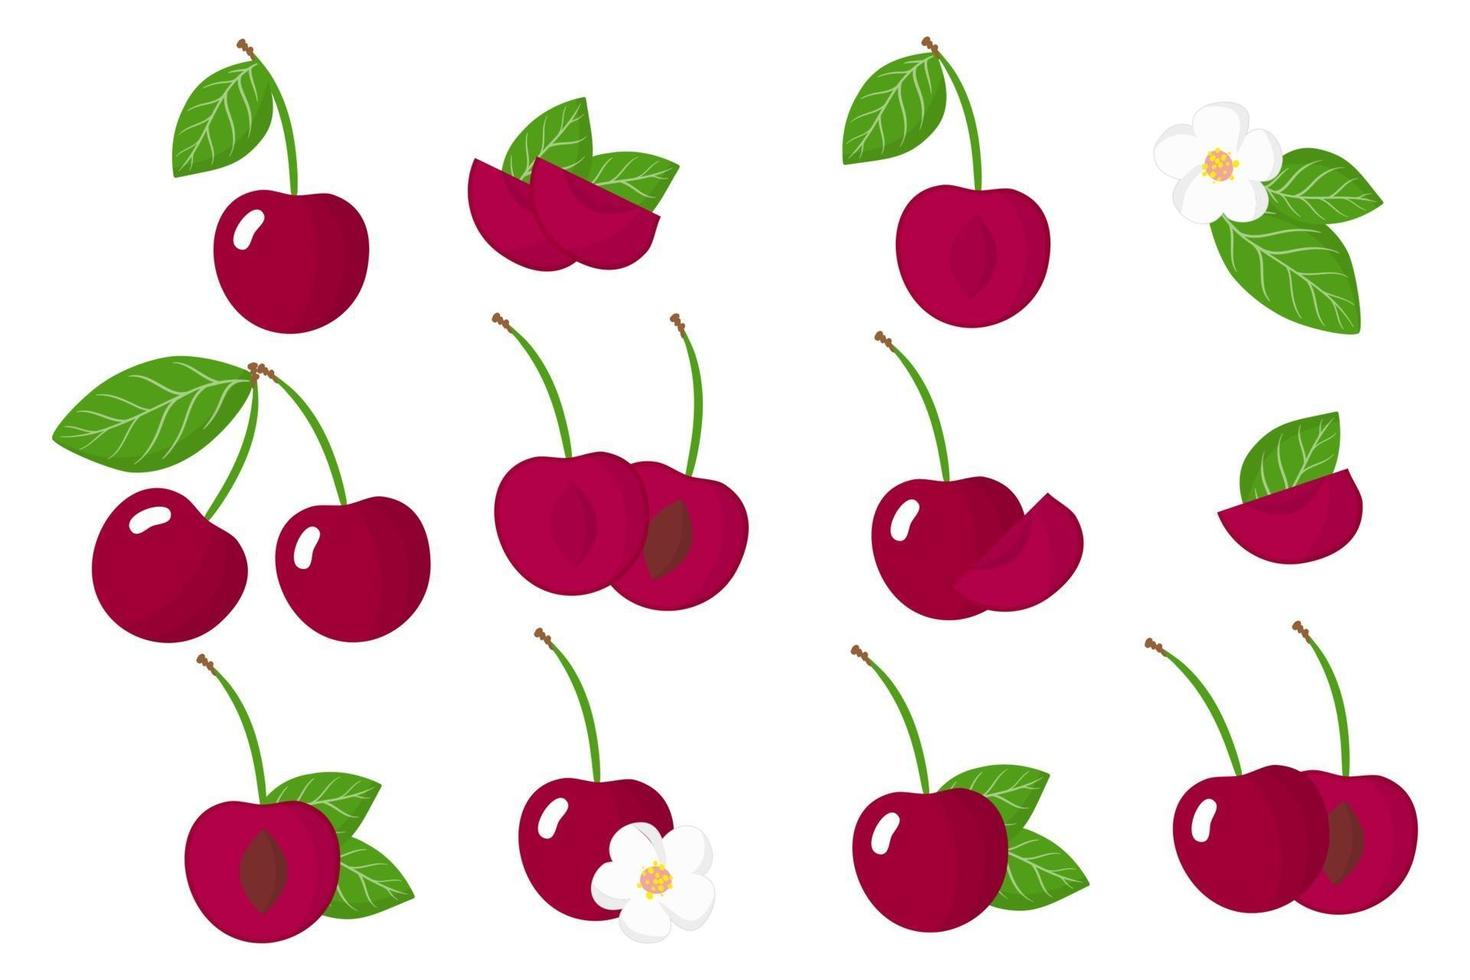 Satz Illustrationen mit Kirschen exotischen Früchten, Blumen und Blättern lokalisiert auf einem weißen Hintergrund. vektor